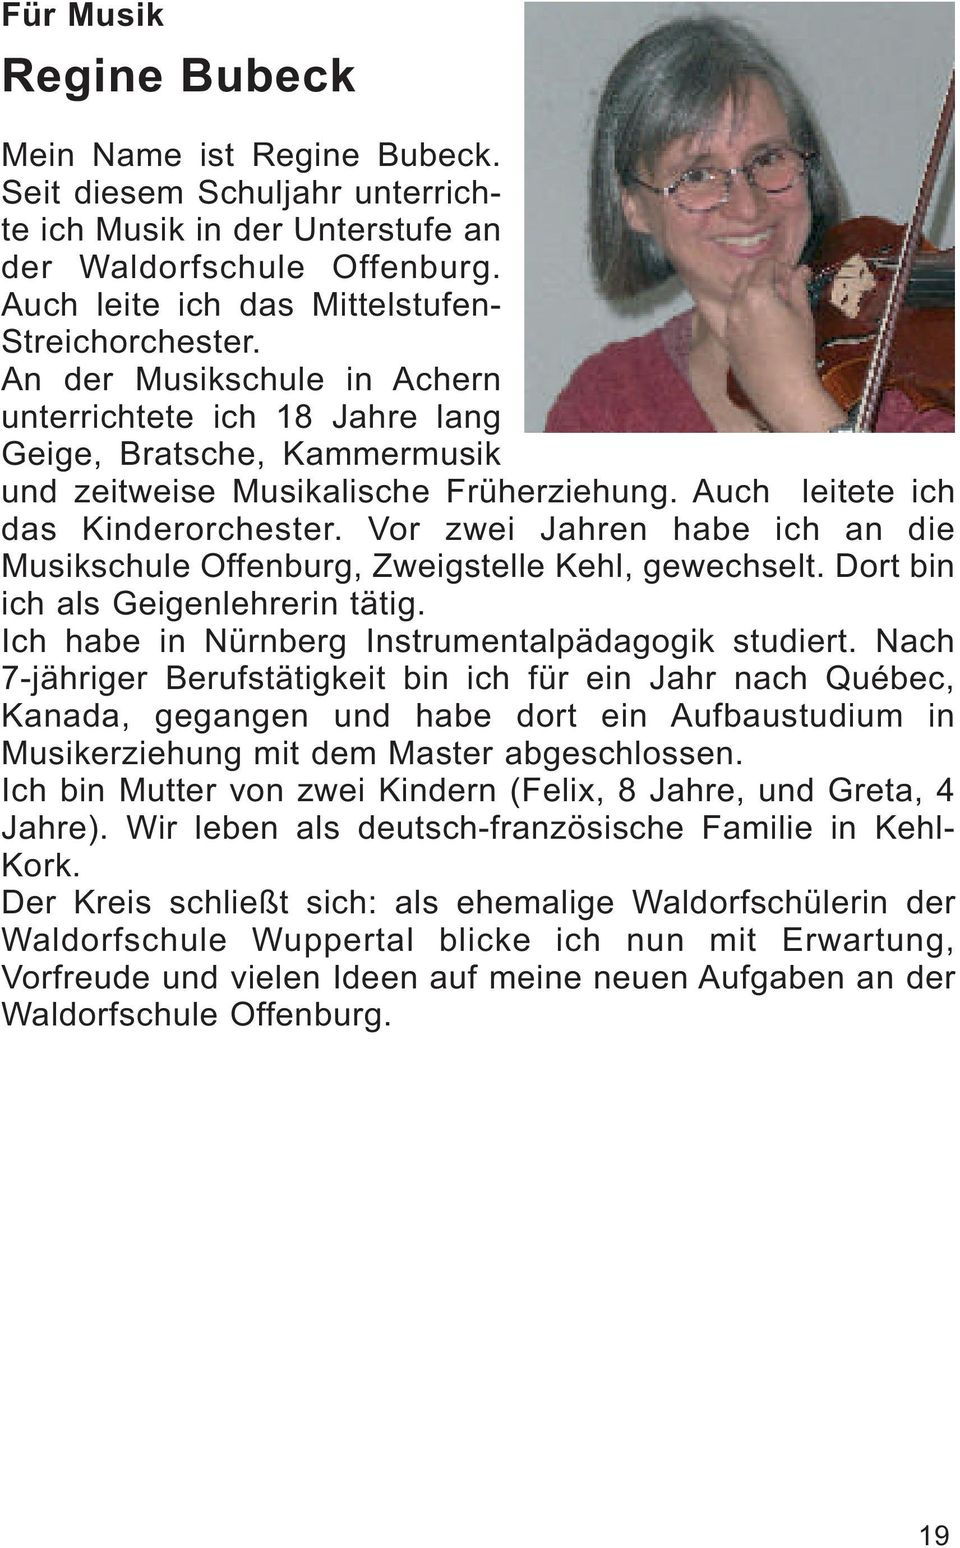 Vor zwei Jahren habe ich an die Musikschule Offenburg, Zweigstelle Kehl, gewechselt. Dort bin ich als Geigenlehrerin tätig. Ich habe in Nürnberg Instrumentalpädagogik studiert.